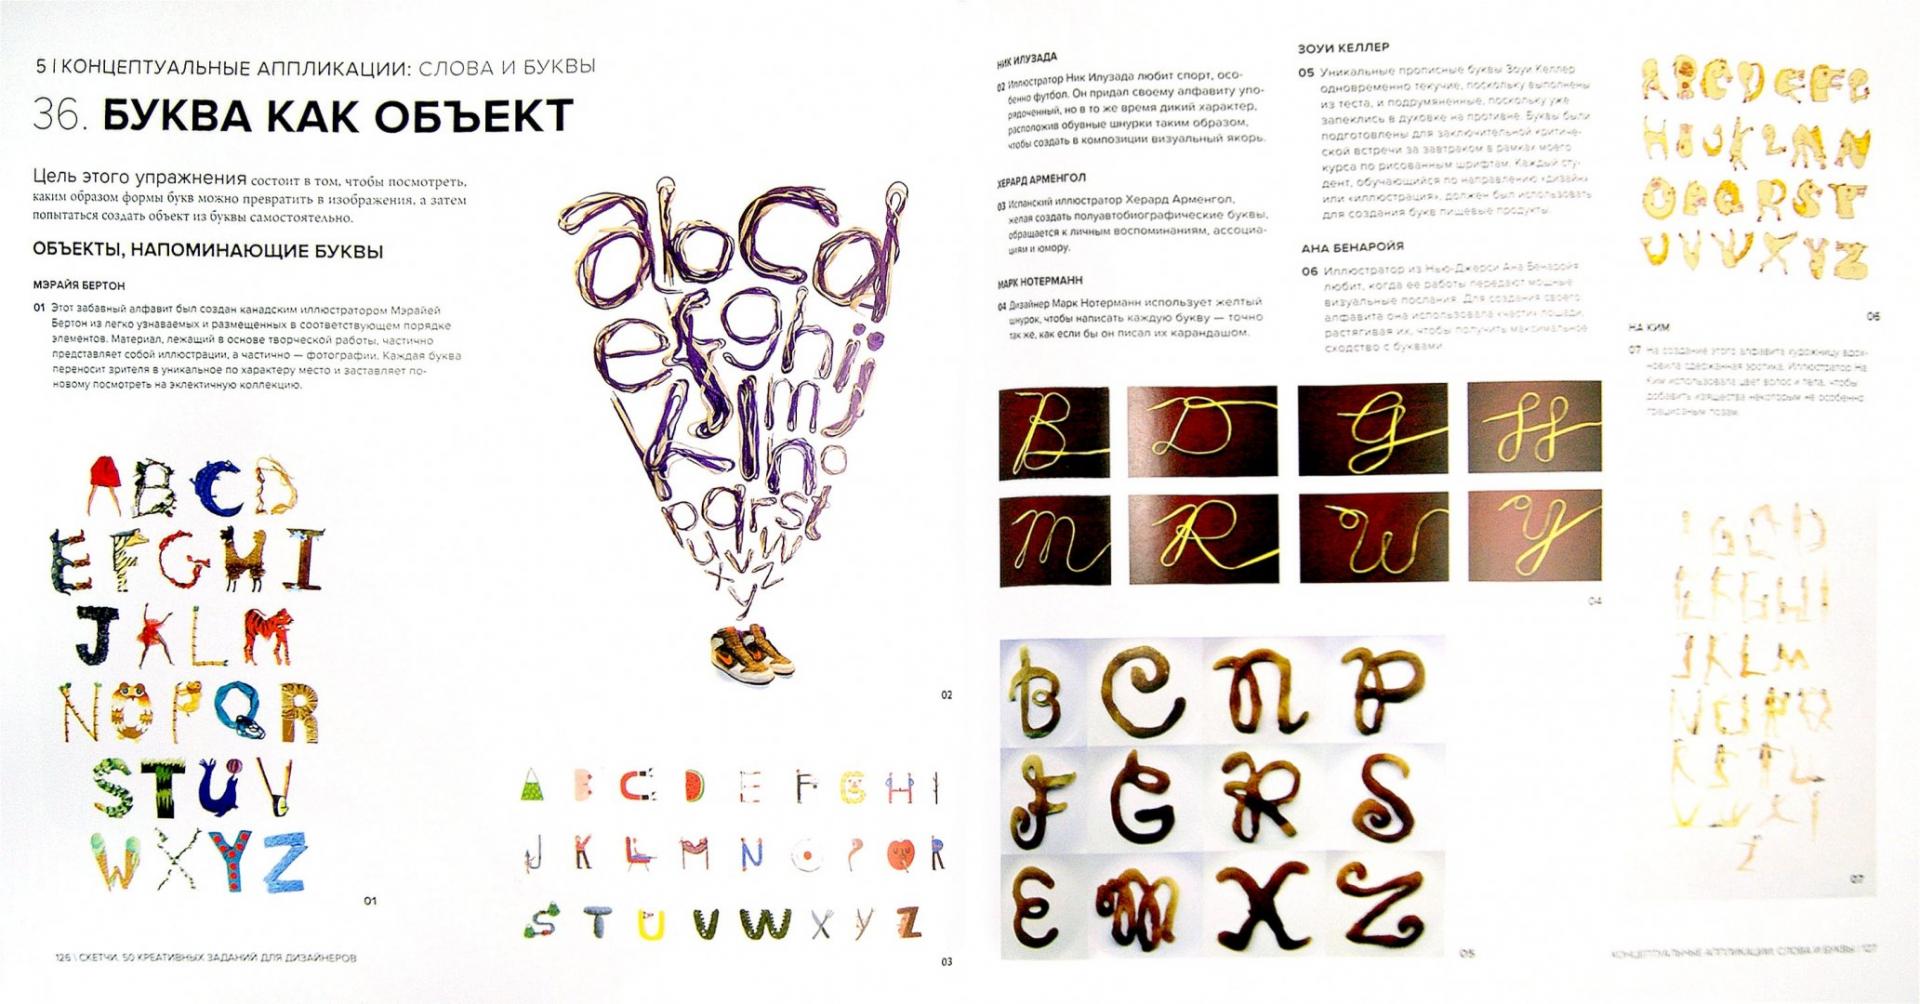 Творческое задание книга. Уитни Шерман скетчи 50 креативных заданий для дизайнеров. Упражнения для графического дизайнера. Задания для графического дизайнера. Креативные задания для дизайнеров.